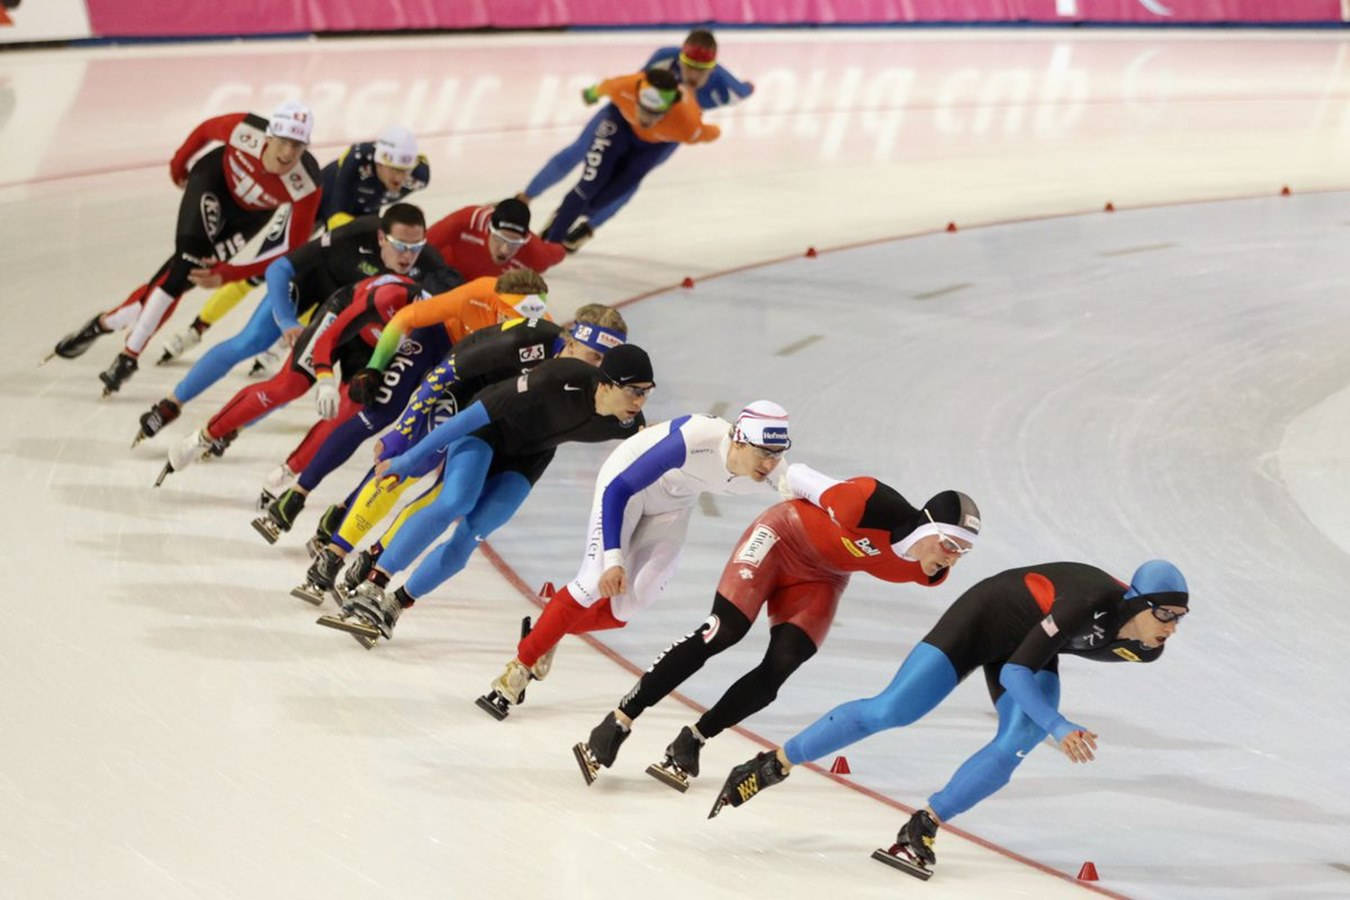 Olympischesportarten Shorttrack Eisschnellläufer Wallpaper